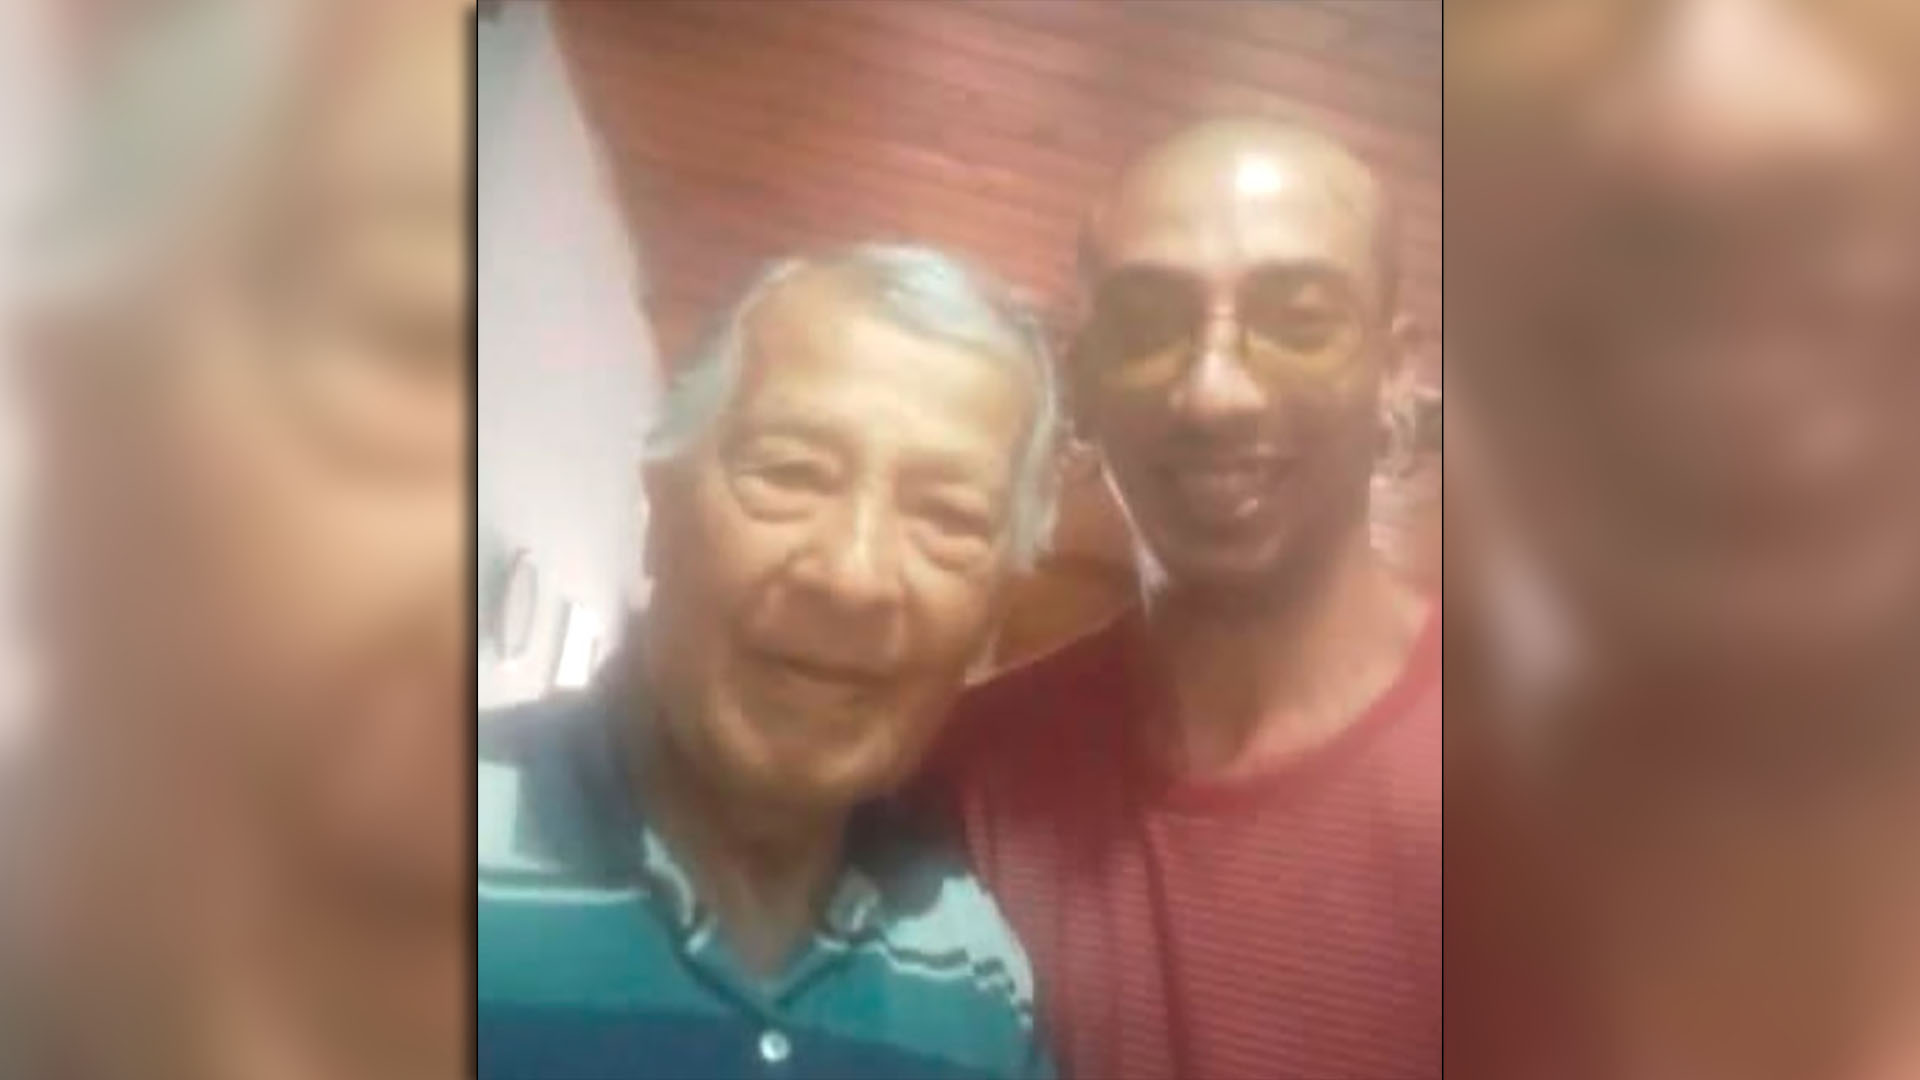 Damián Rodrigo Tello and his grandfather, Antonio Carrano, in a 2019 Instagram post